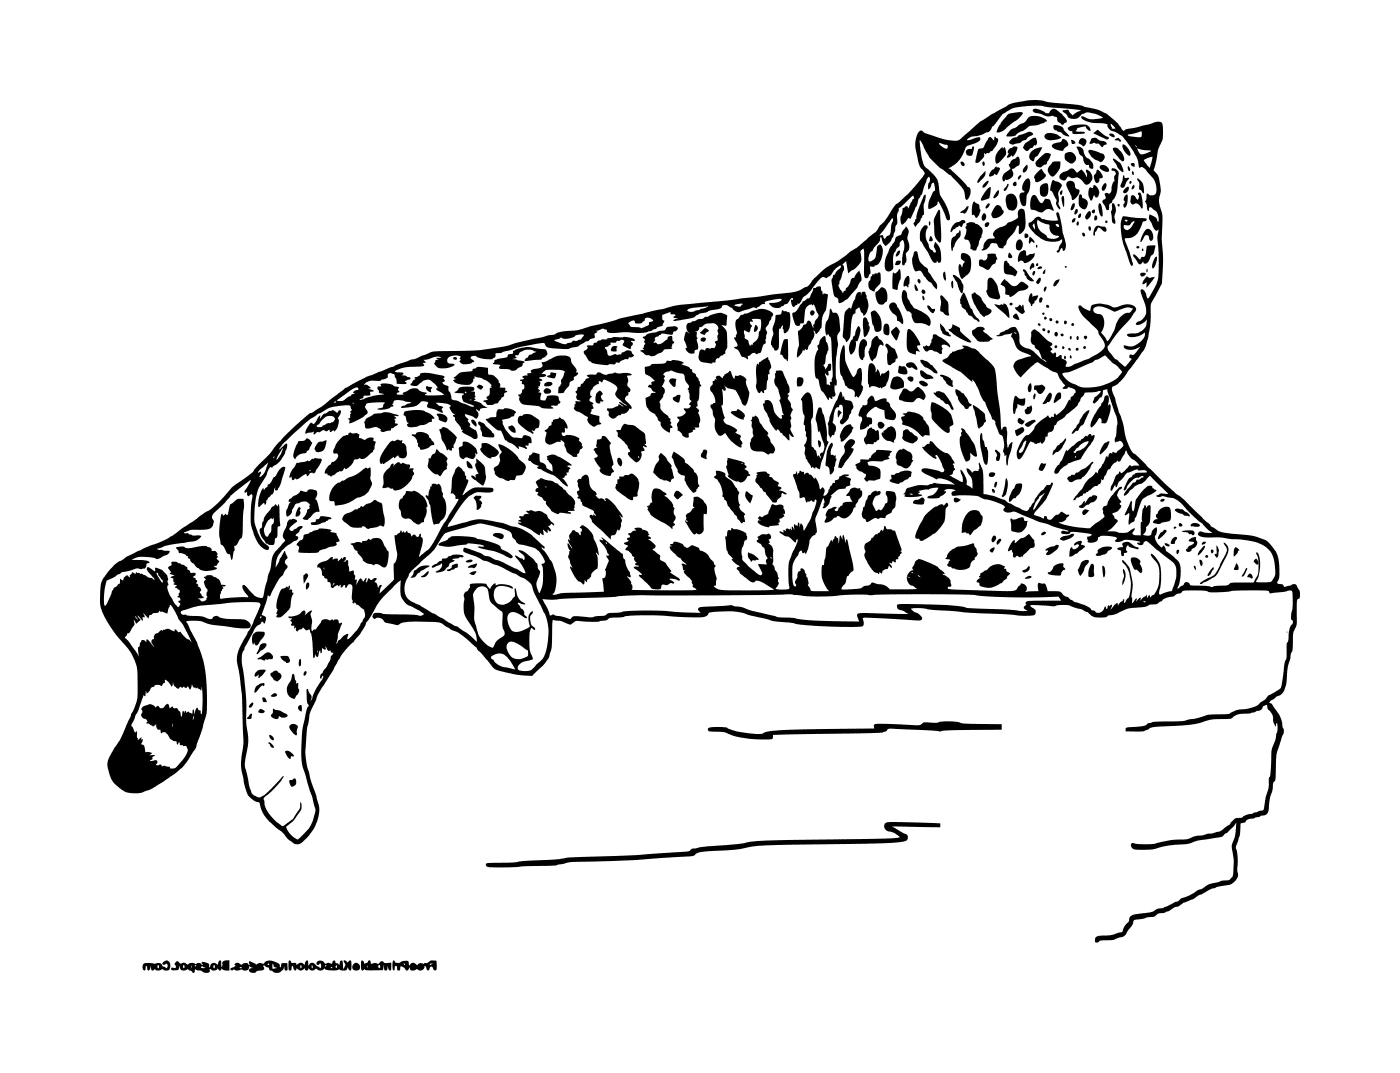   Un léopard couché 